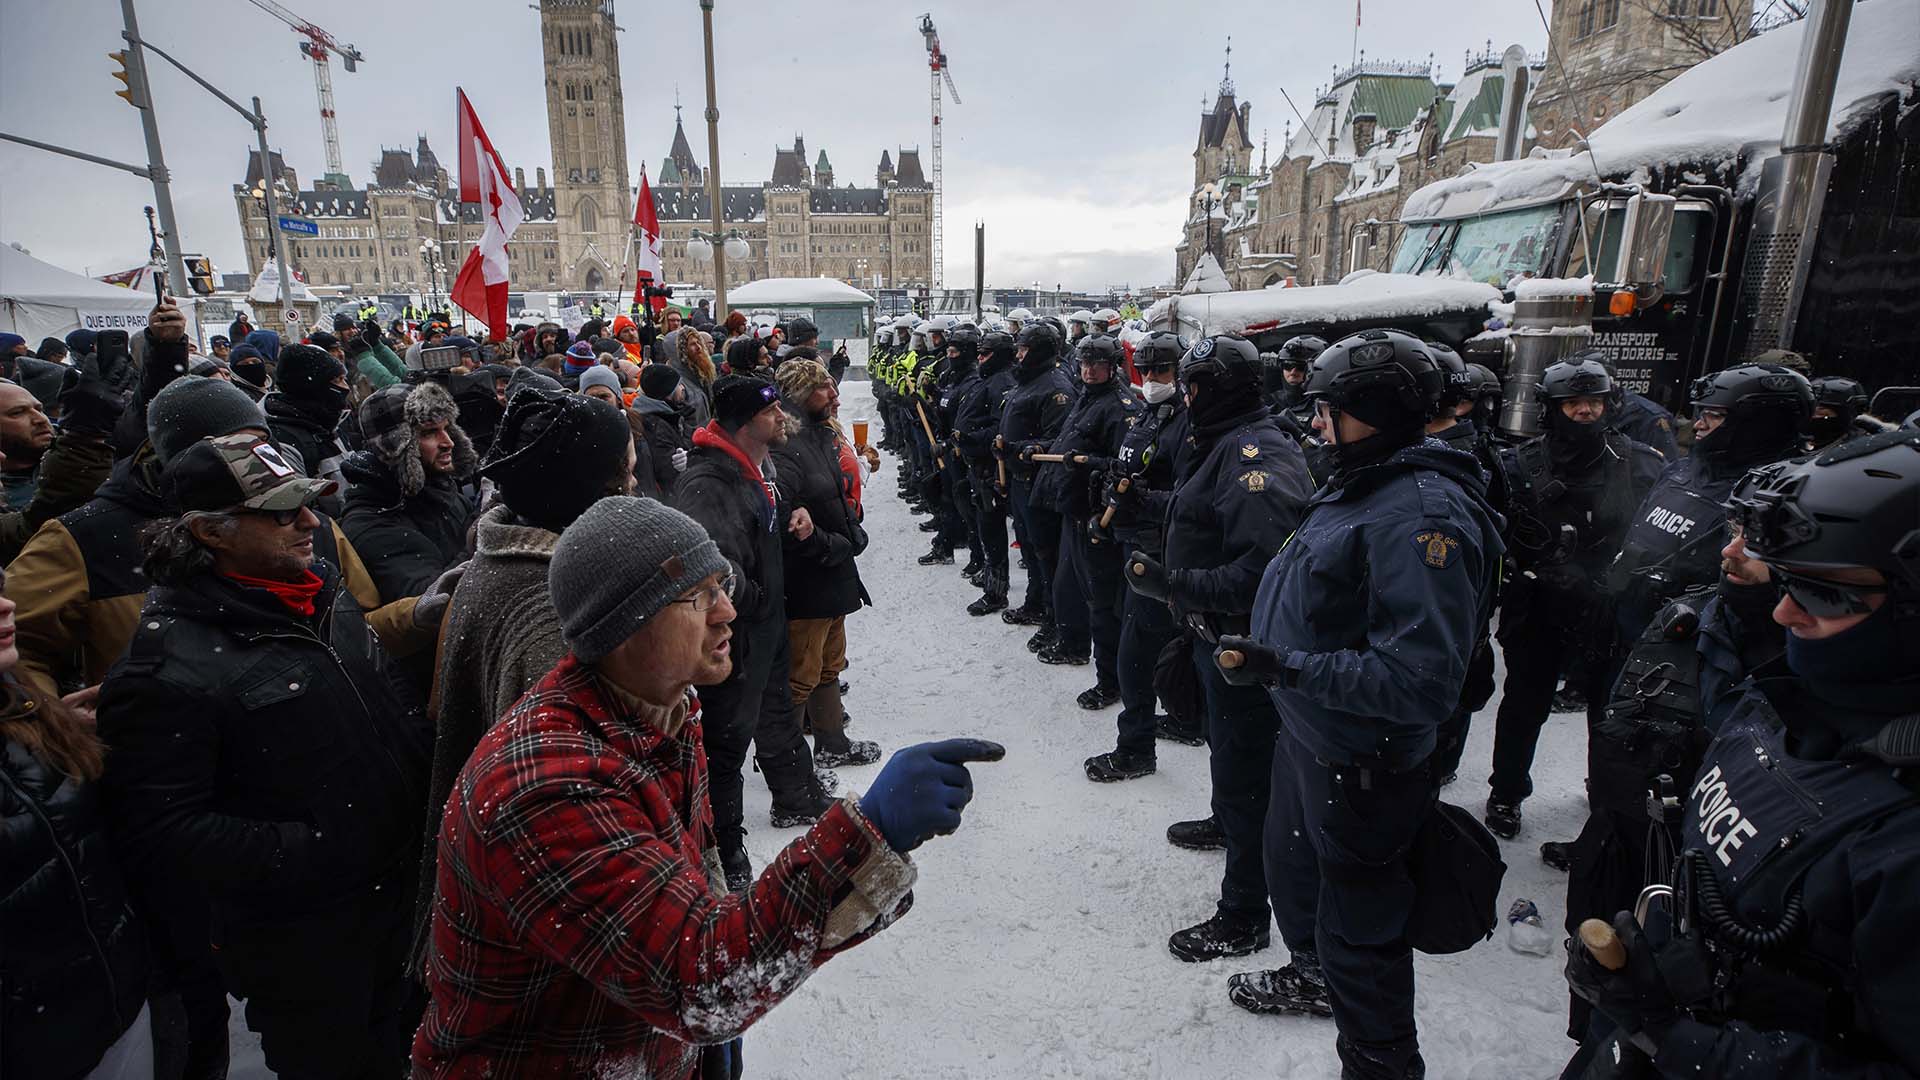 La police est intevenue pour libérer le centre-ville d'Ottawa, près de la Colline du Parlement, des manifestants après des semaines de manifestations, le 19 février 2022.